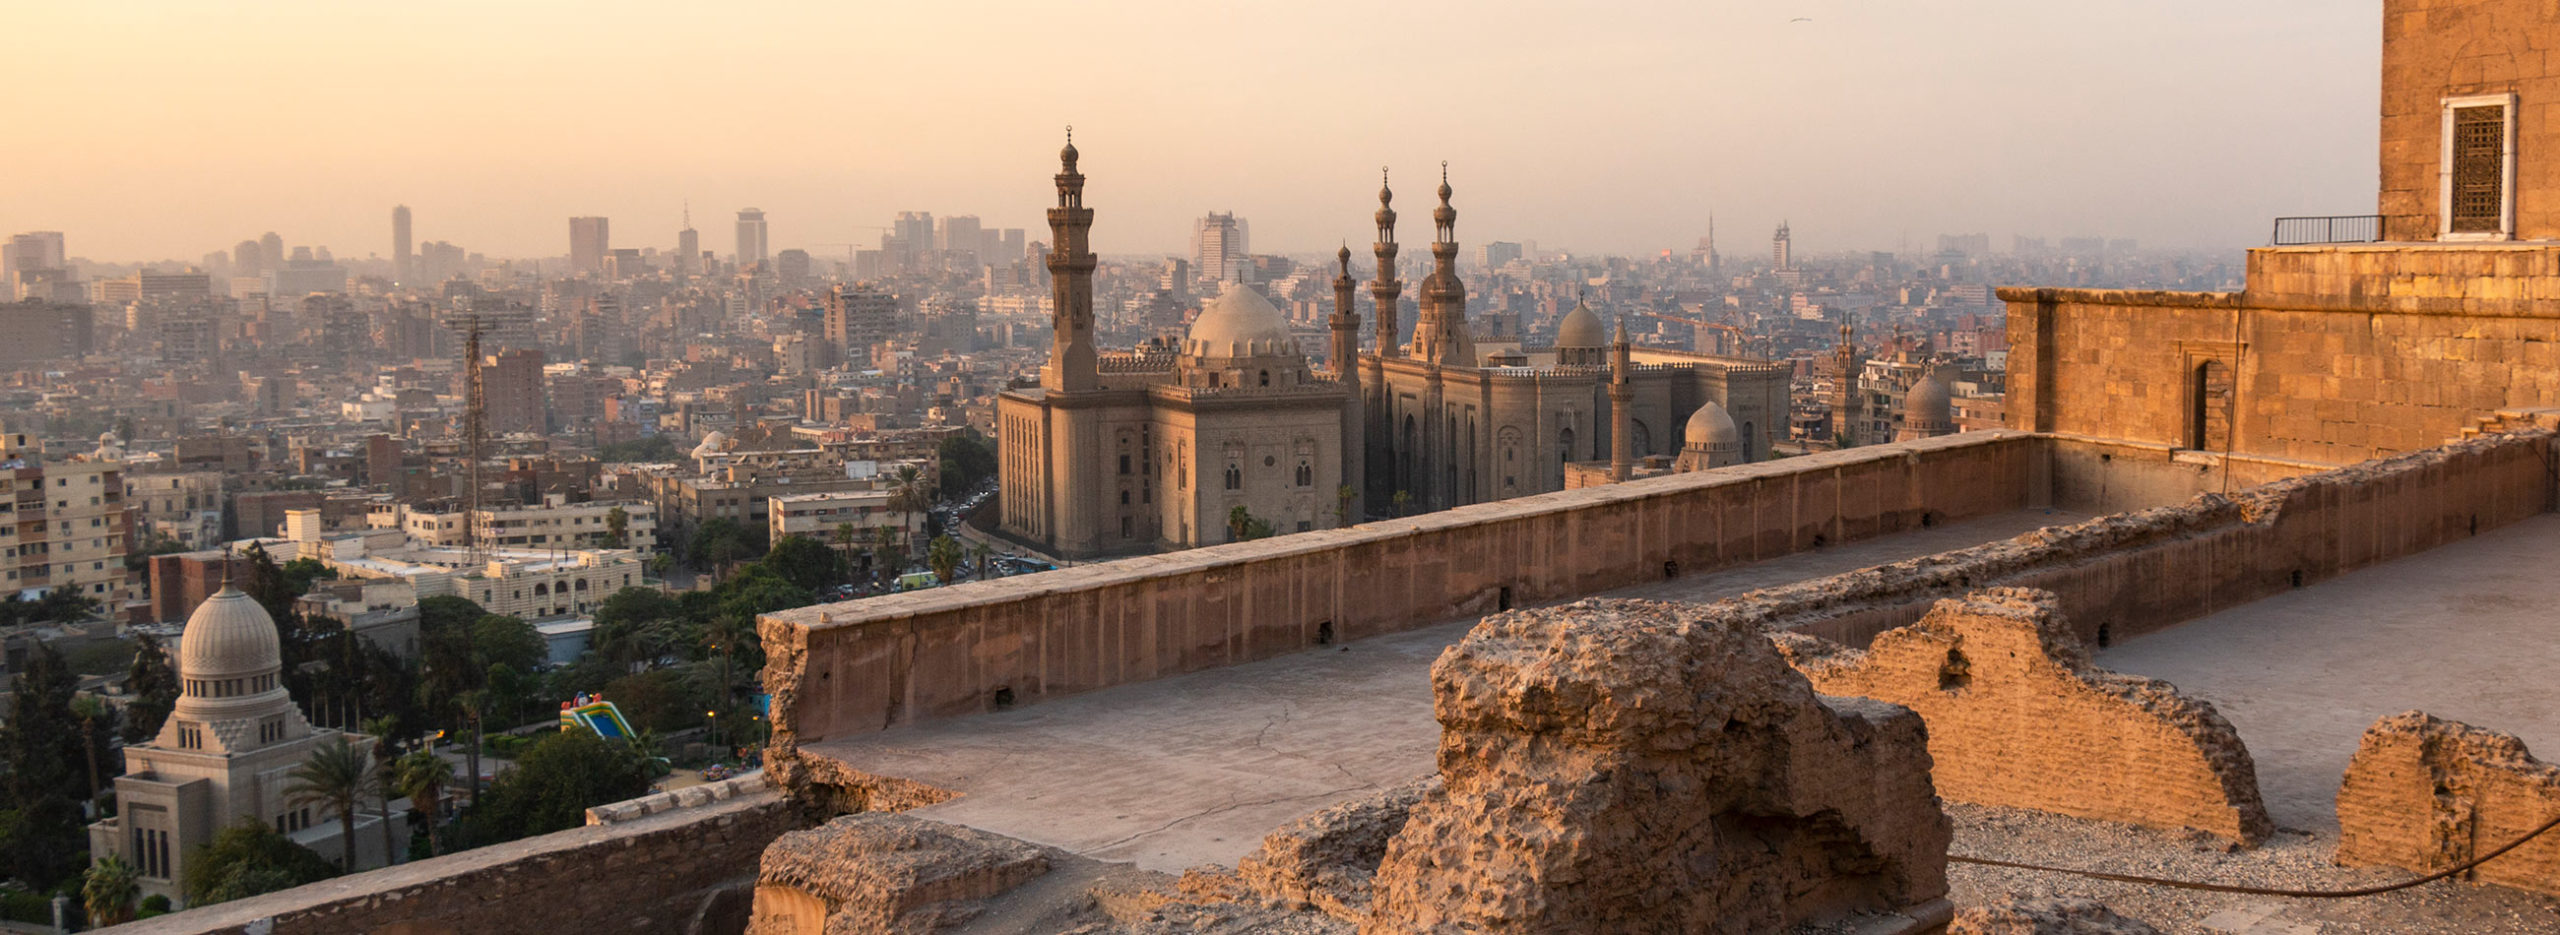 Ville du Caire depuis la Citadelle, Égypte / View of Cairo from the Citadel, Egypt